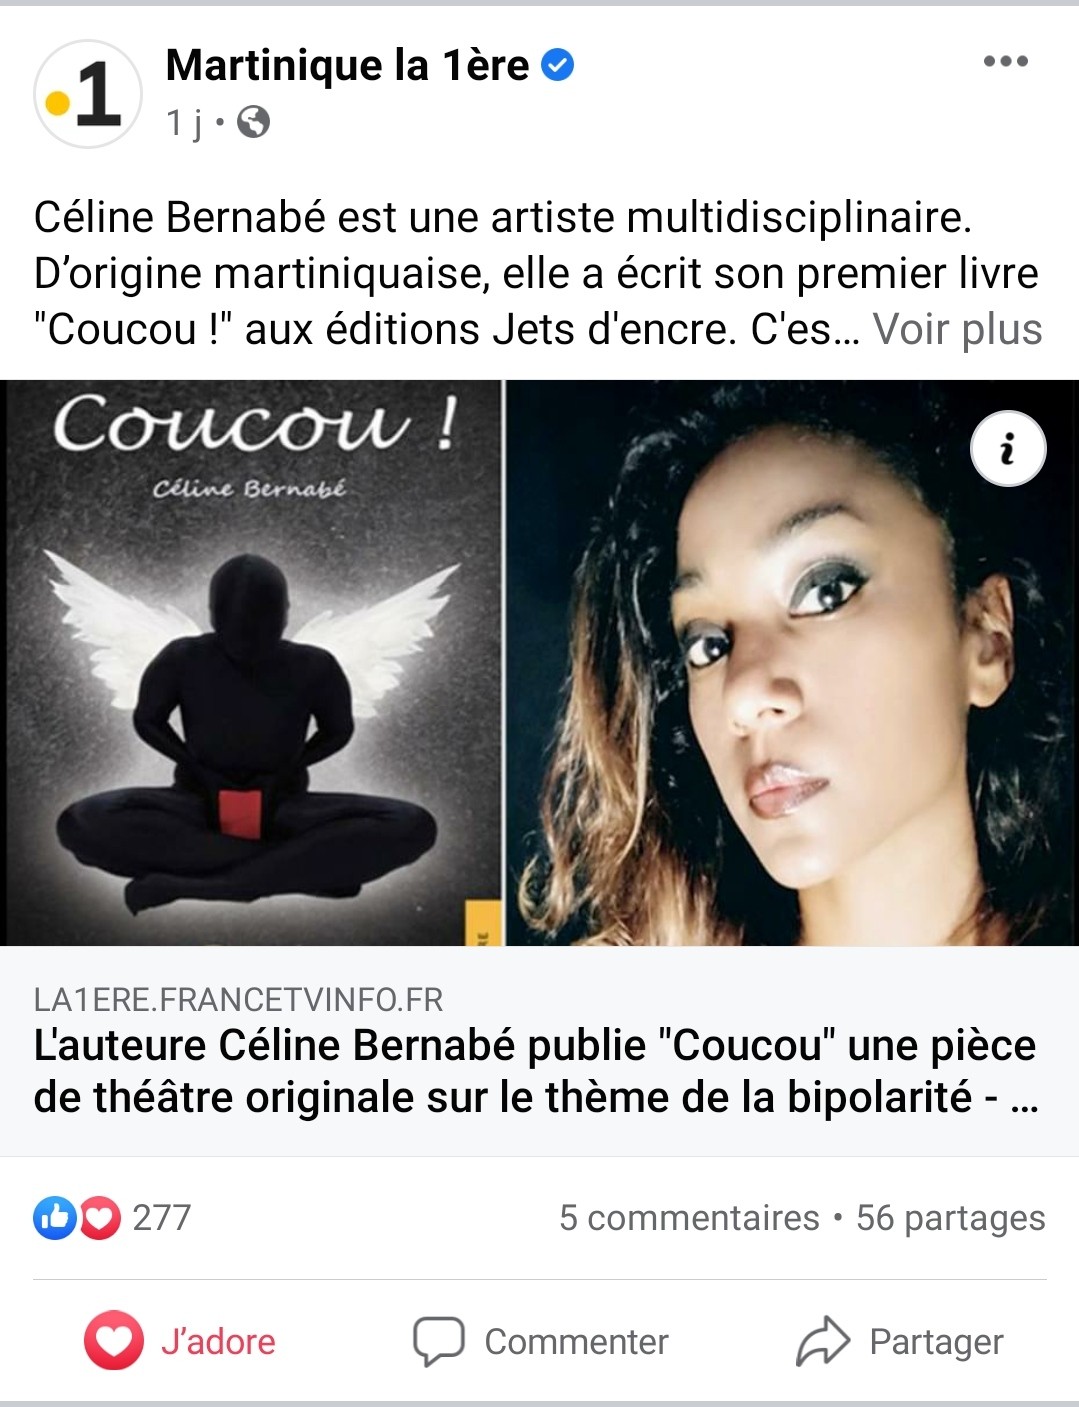 Article en ligne de Martinique la première (France Télévisions)